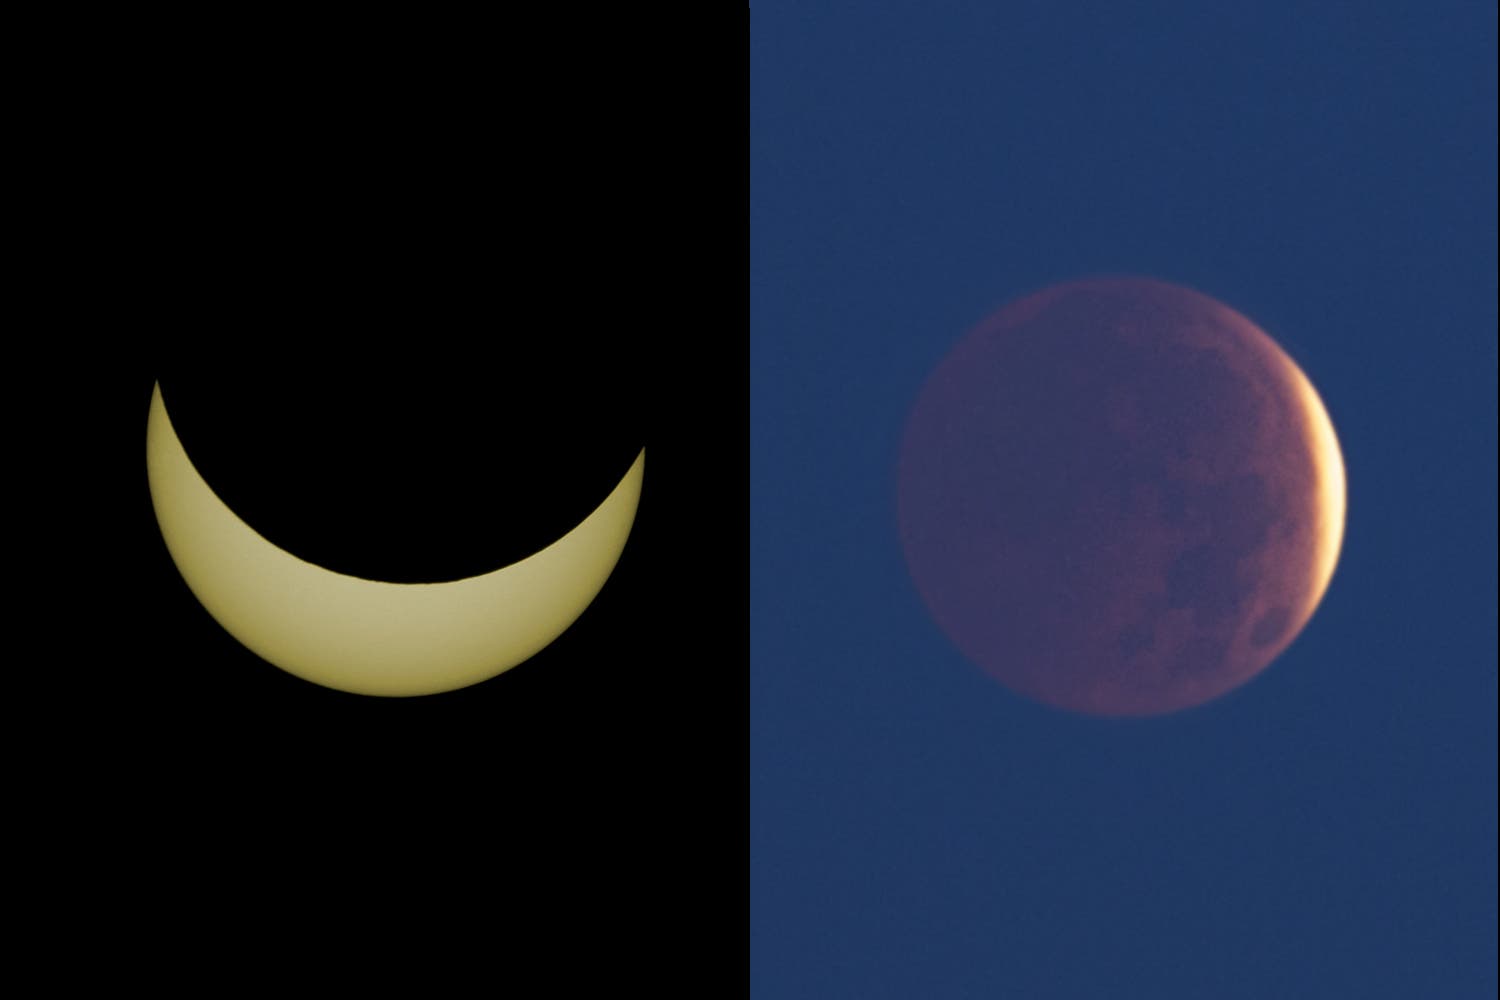 Sonnenfinsternis am 20.3.15 und zugehörige Mondfinsternis am 4.4.15